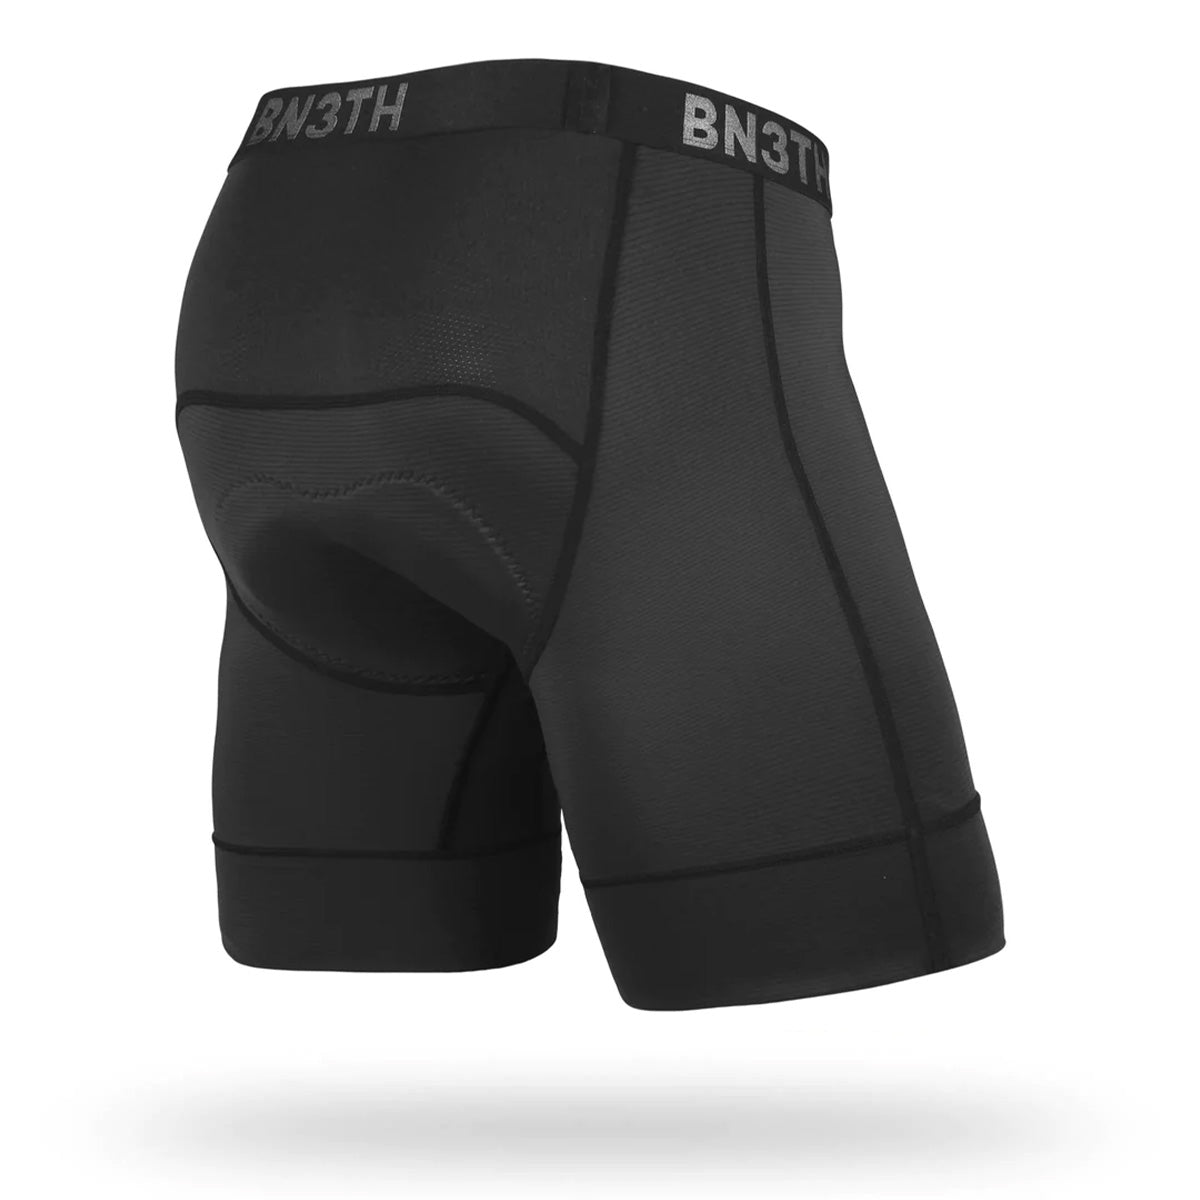 BN3TH Men's Pro XT2 Boxer Brief (Black/White, X-Small) 